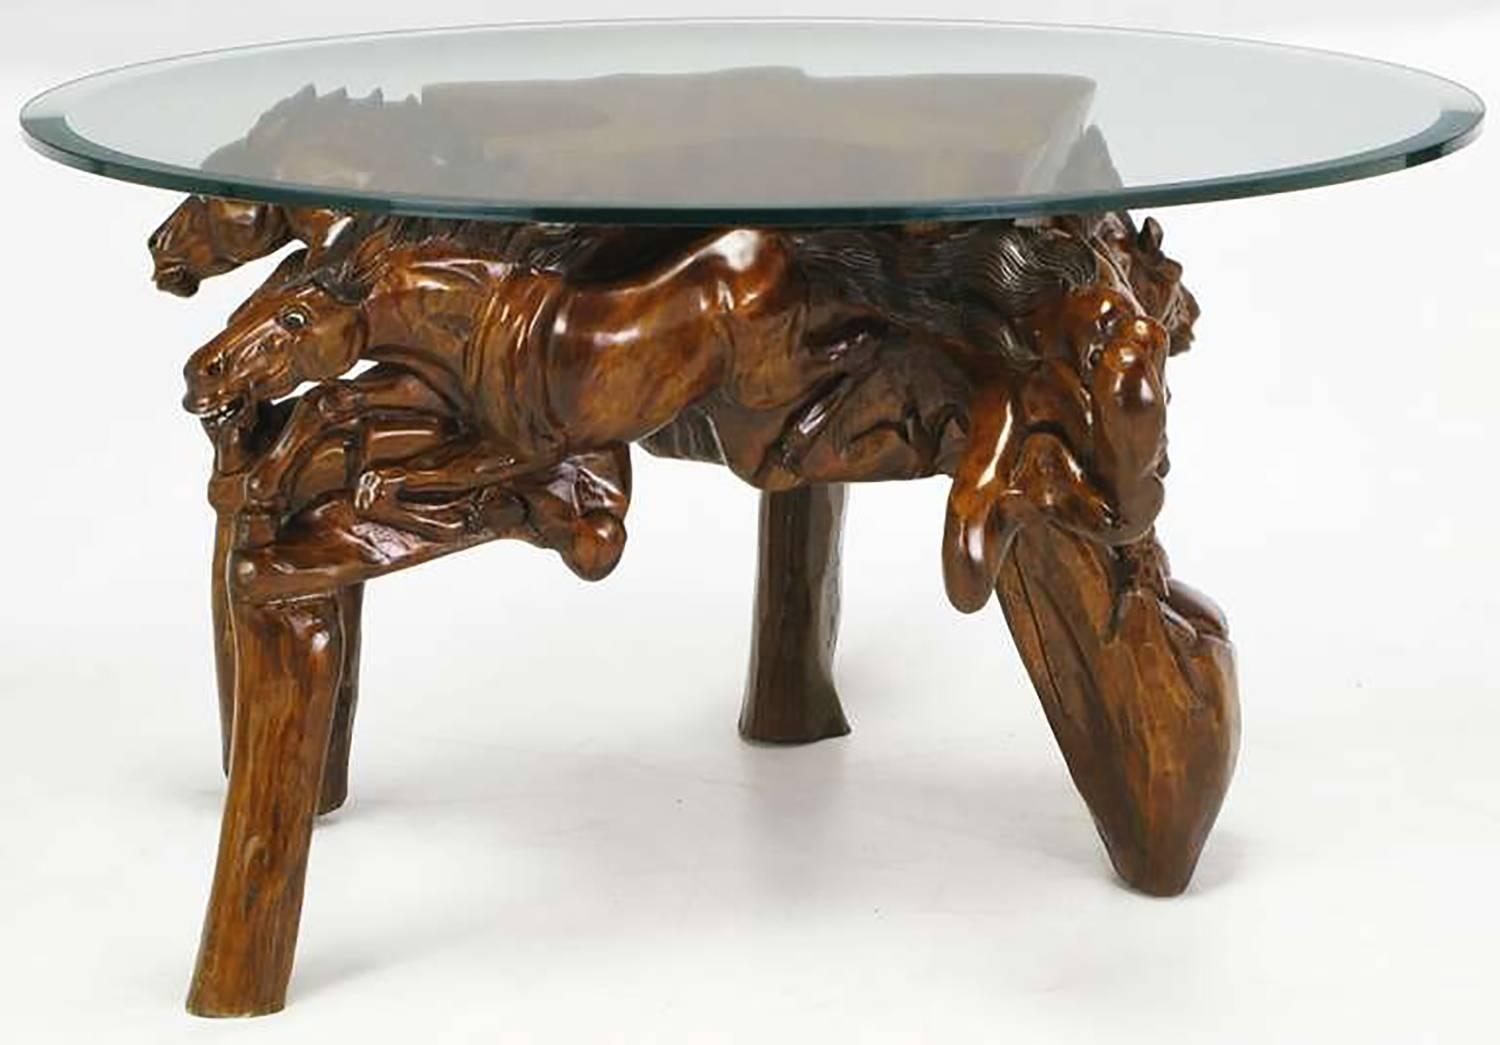 Œuvre d'art artisanale, cette table basse est sculptée à la main dans du bois, teintée et brunie, puis polie. Les chevaux au galop semblent venir du centre de la base de la table. Les pieds sont sculptés pour ressembler à des poteaux de bois. Le